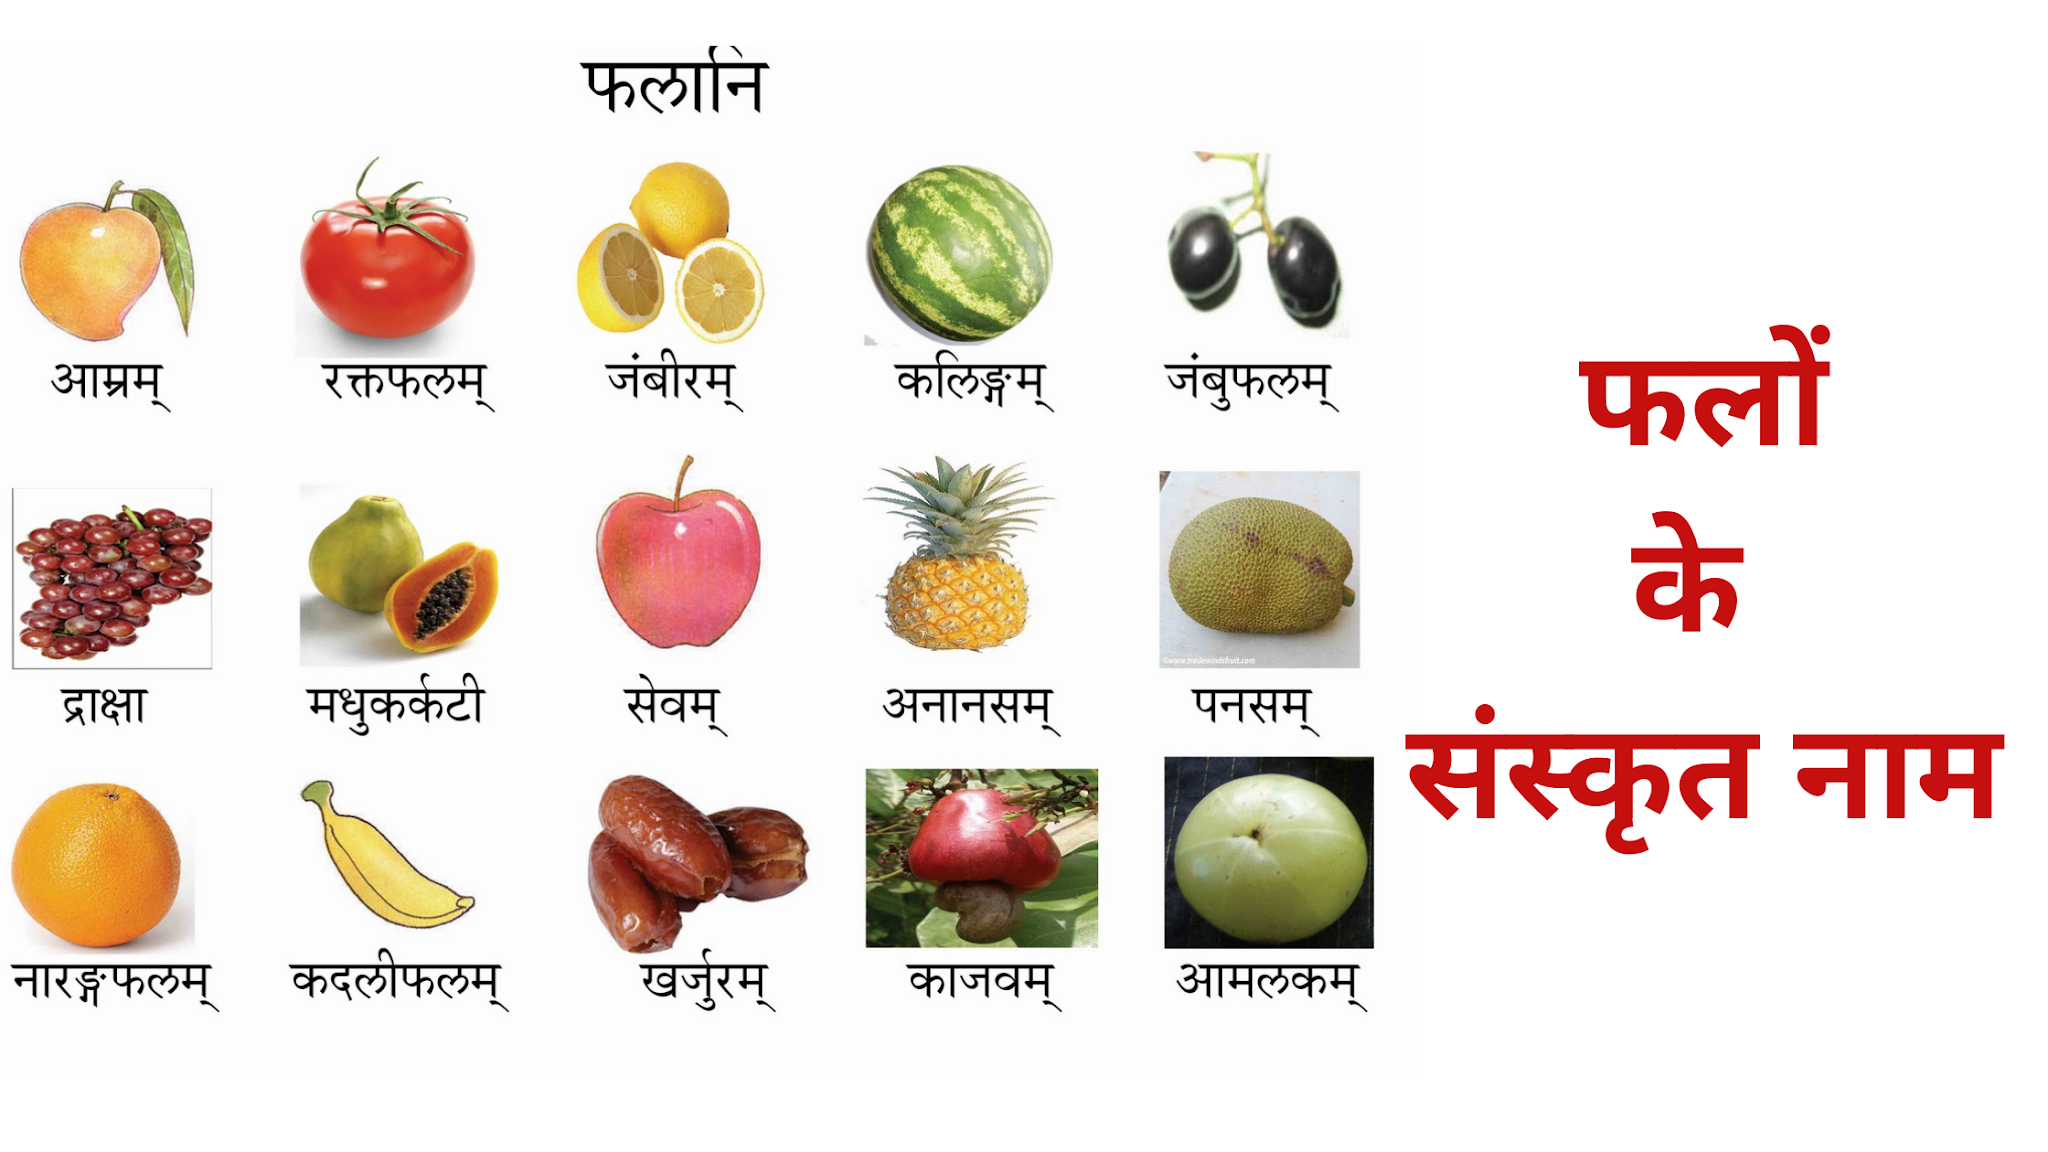 Fruits Names In Sanskrit,फलों के नाम संस्कृत में